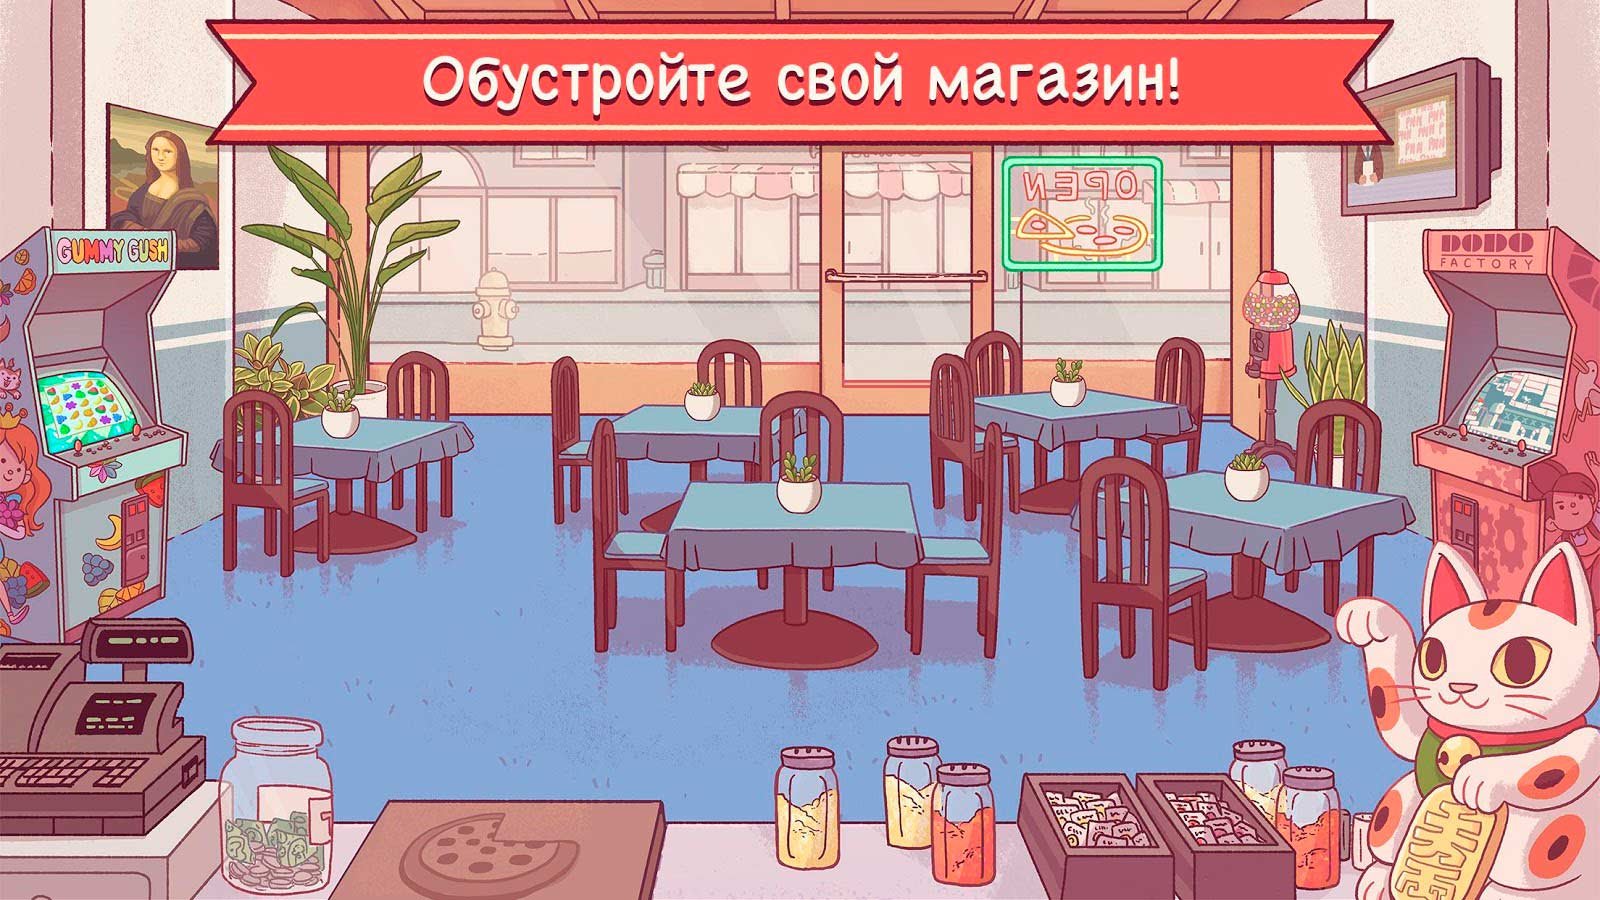 пицца игра скачать бесплатно андроид на русском фото 20